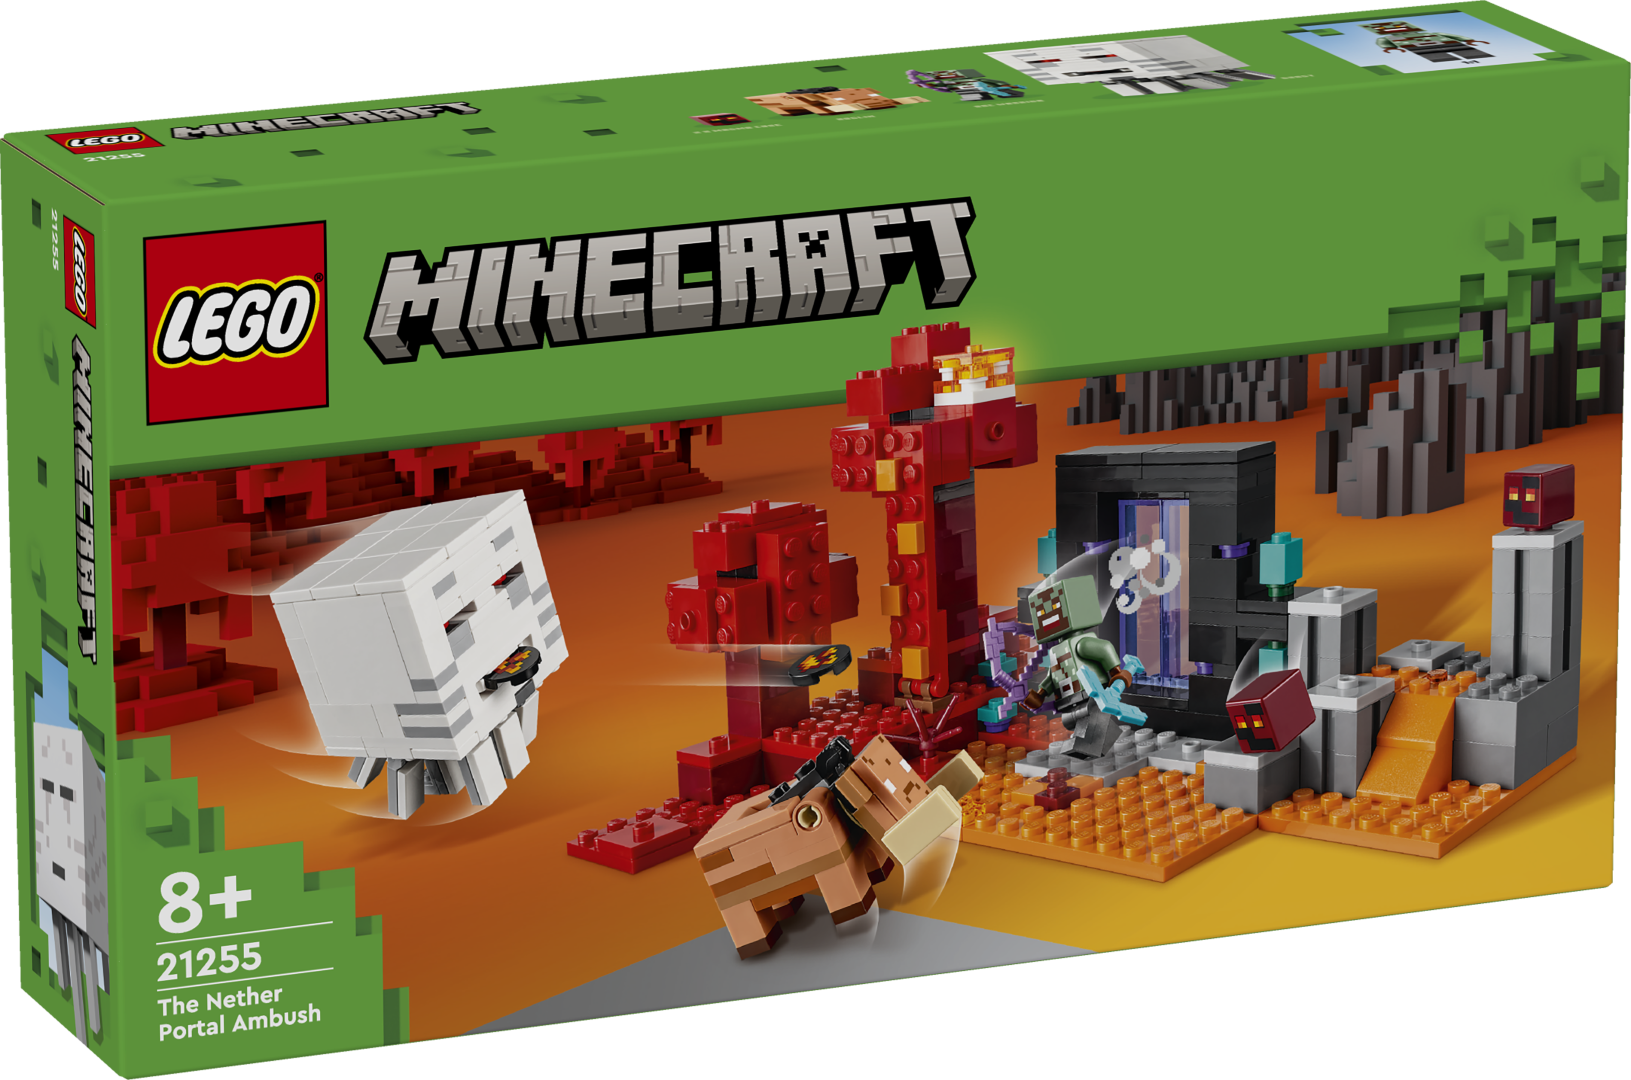 Mängukomplekt LEGO Minecrafti Netheri portaali varitsuse (21255) pakub mängijatele lõputuid ehitus- ja mänguseiklusi, mis sisaldavad Minecrafti ikoonilisi tegel